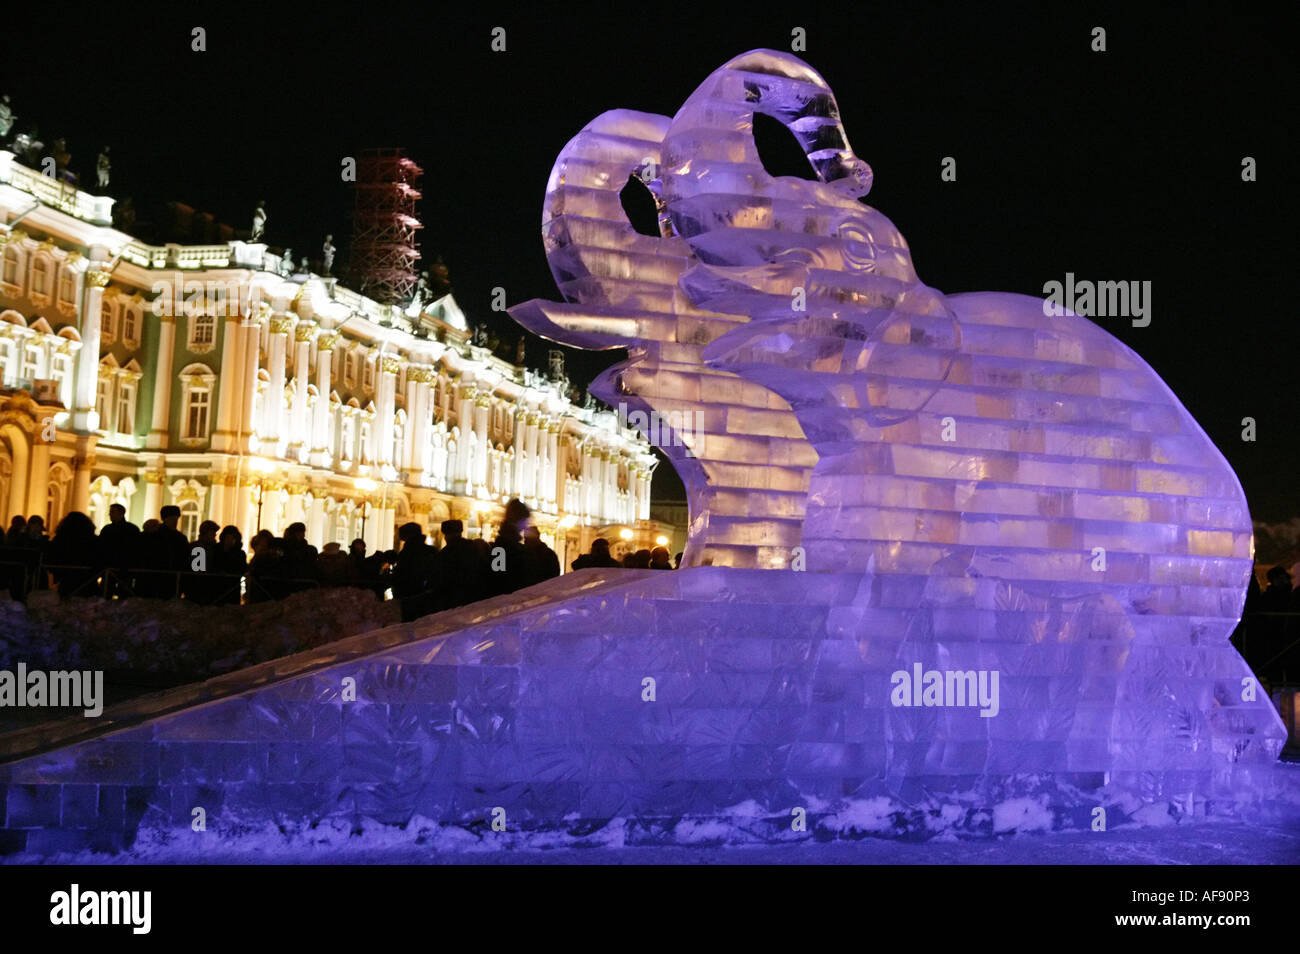 La Russie. Saint Petersburg. Palais de glace sur la Place du Palais, copie exacte de Palace, qui fut construit en 1740. Banque D'Images